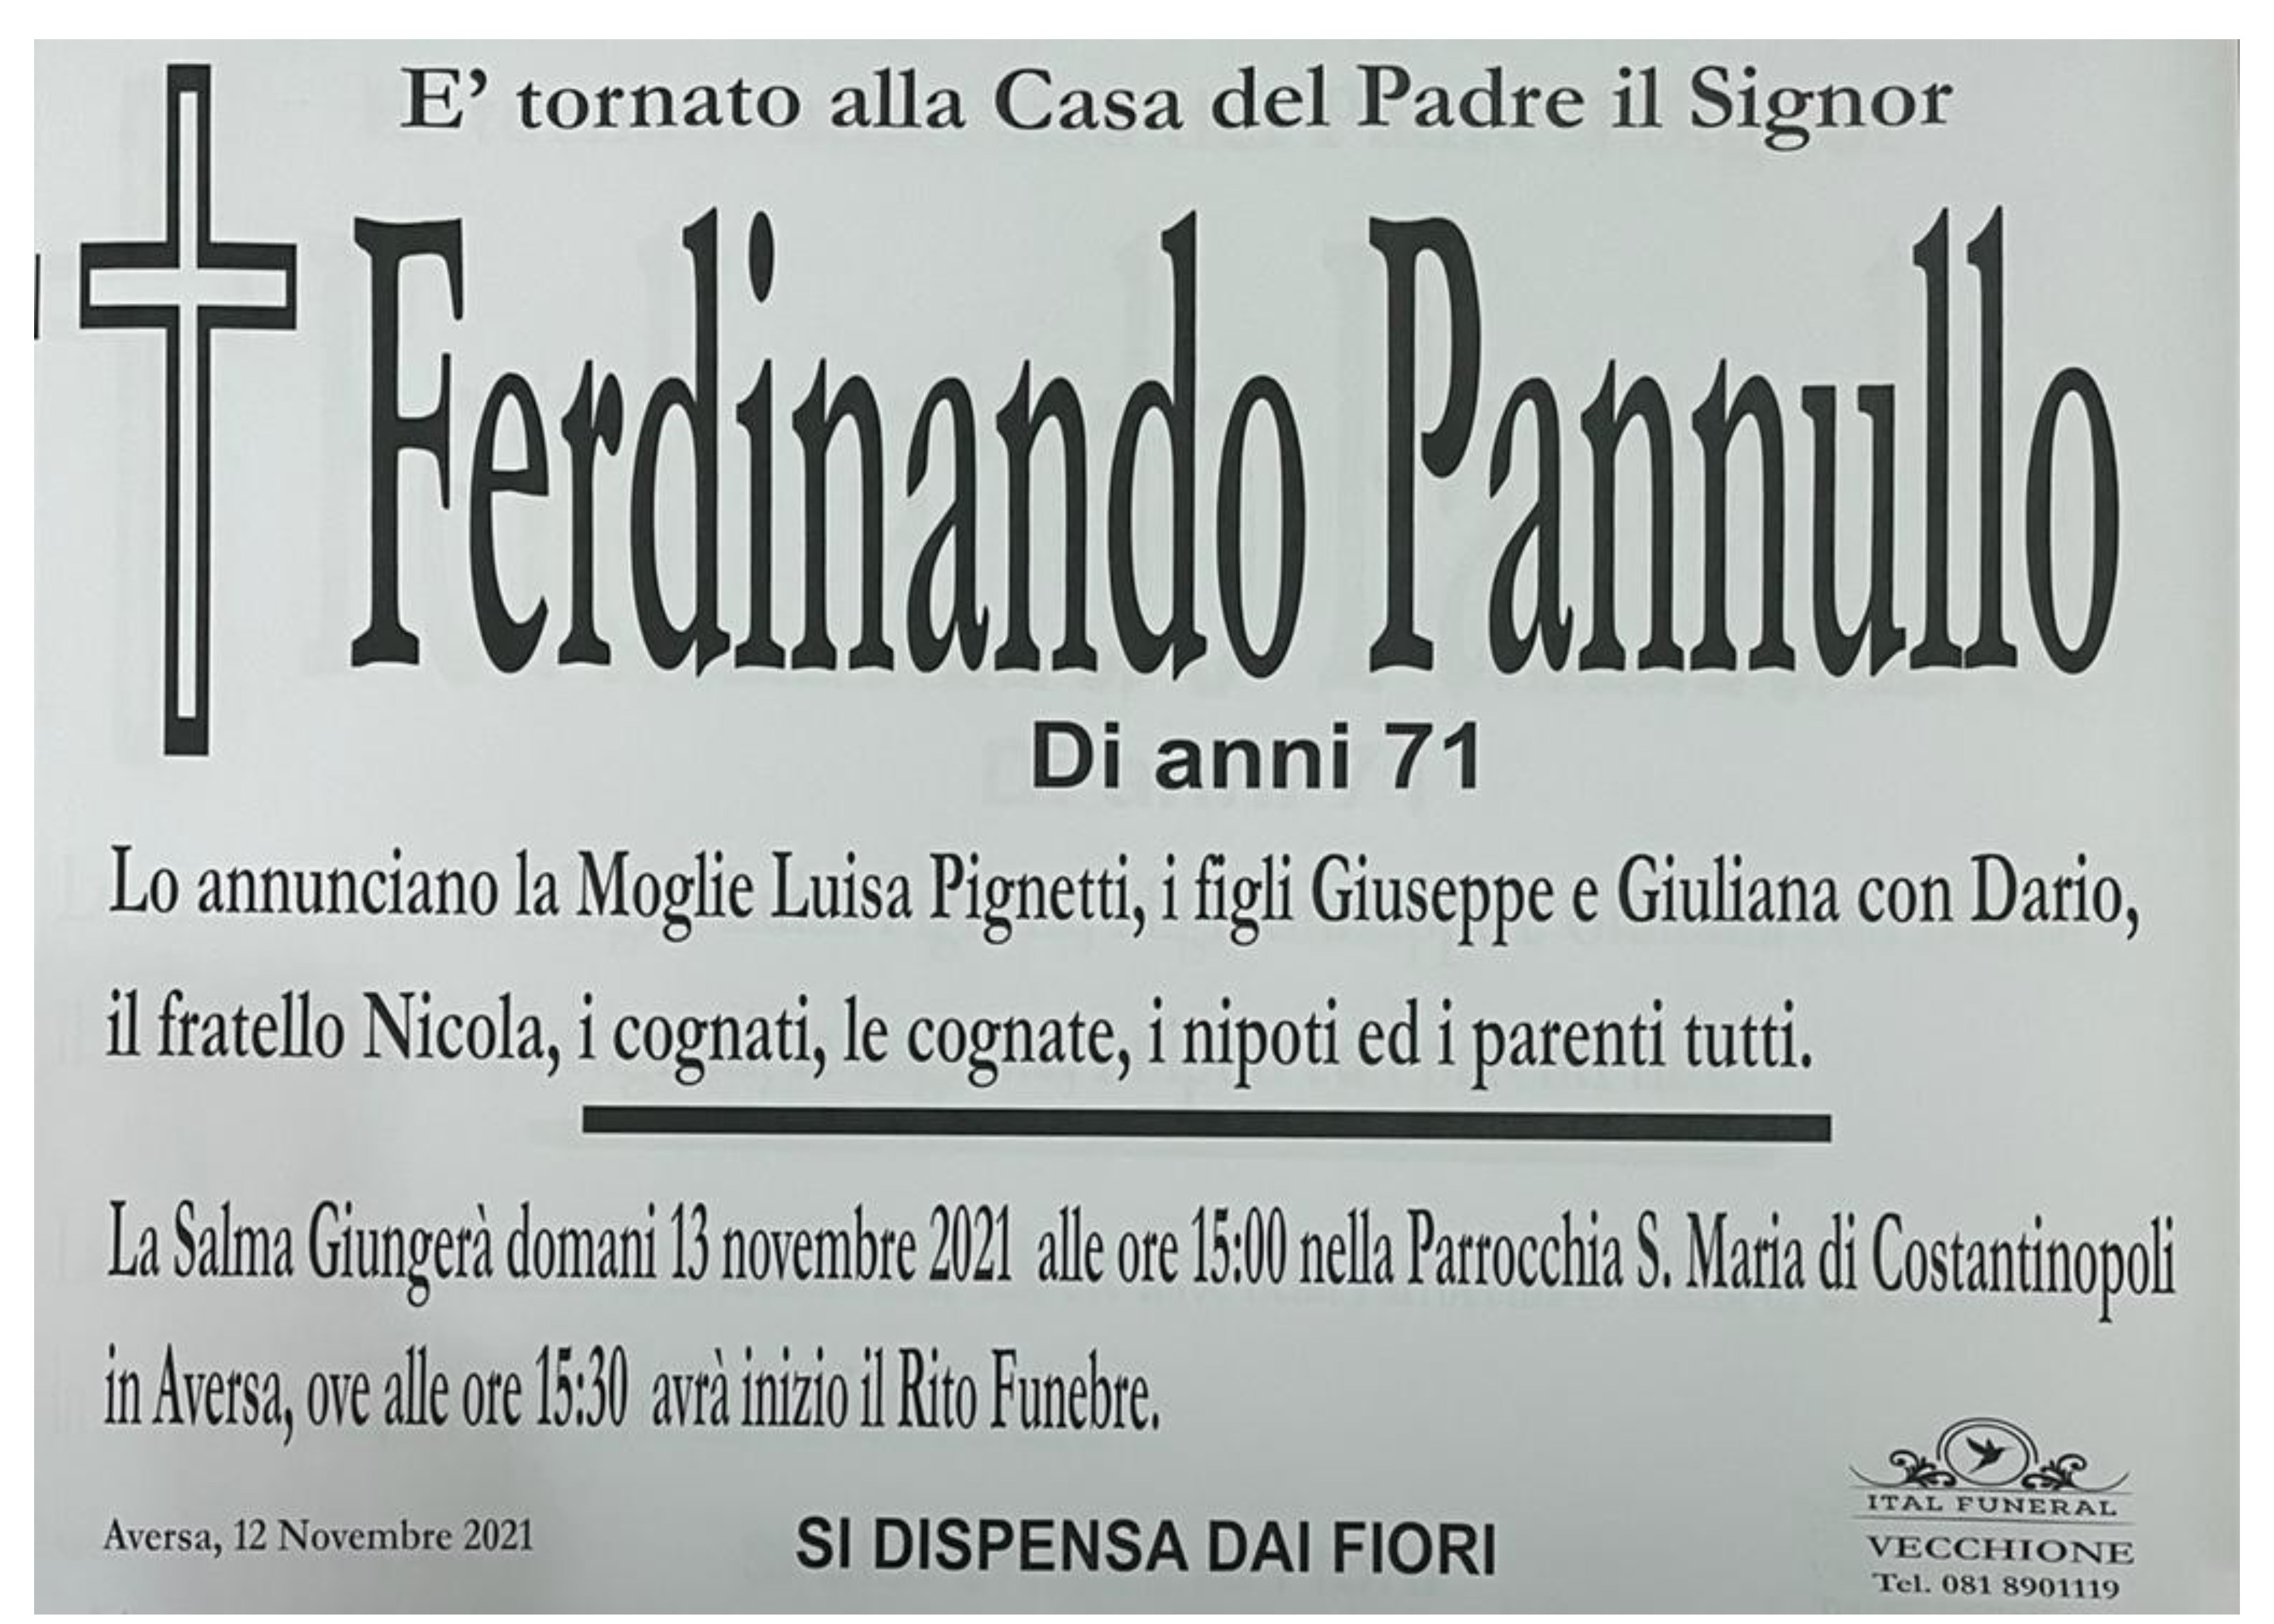 Ferdinando Pannullo